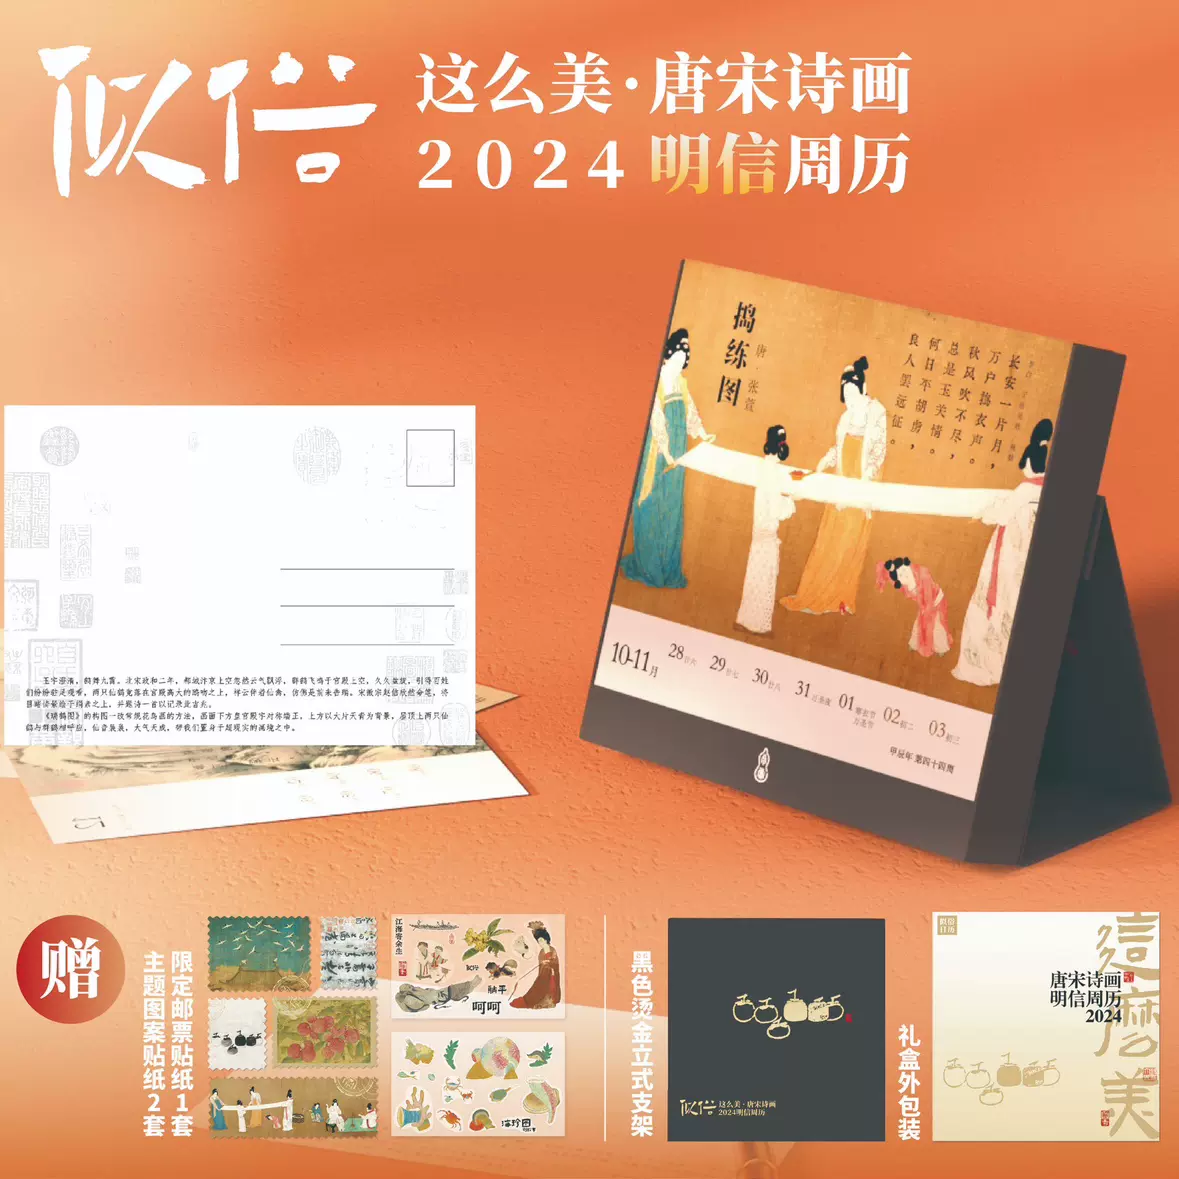 这么美·唐宋诗画明信片周历2024年赠邮票海珍图贴纸日历节日-Taobao